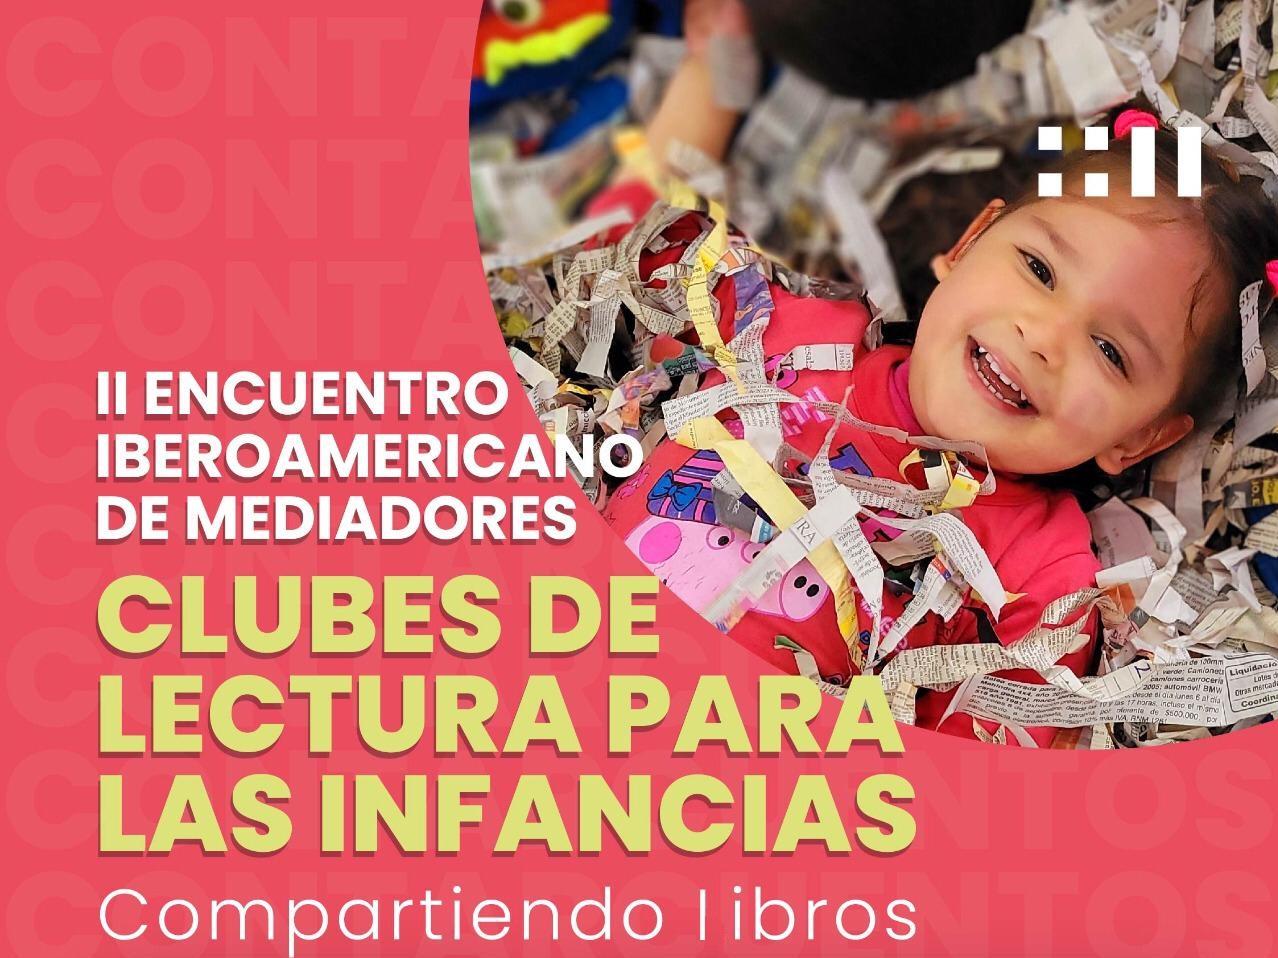 II Encuentro Iberoamericano de mediadores de clubes de lectura para las infancias